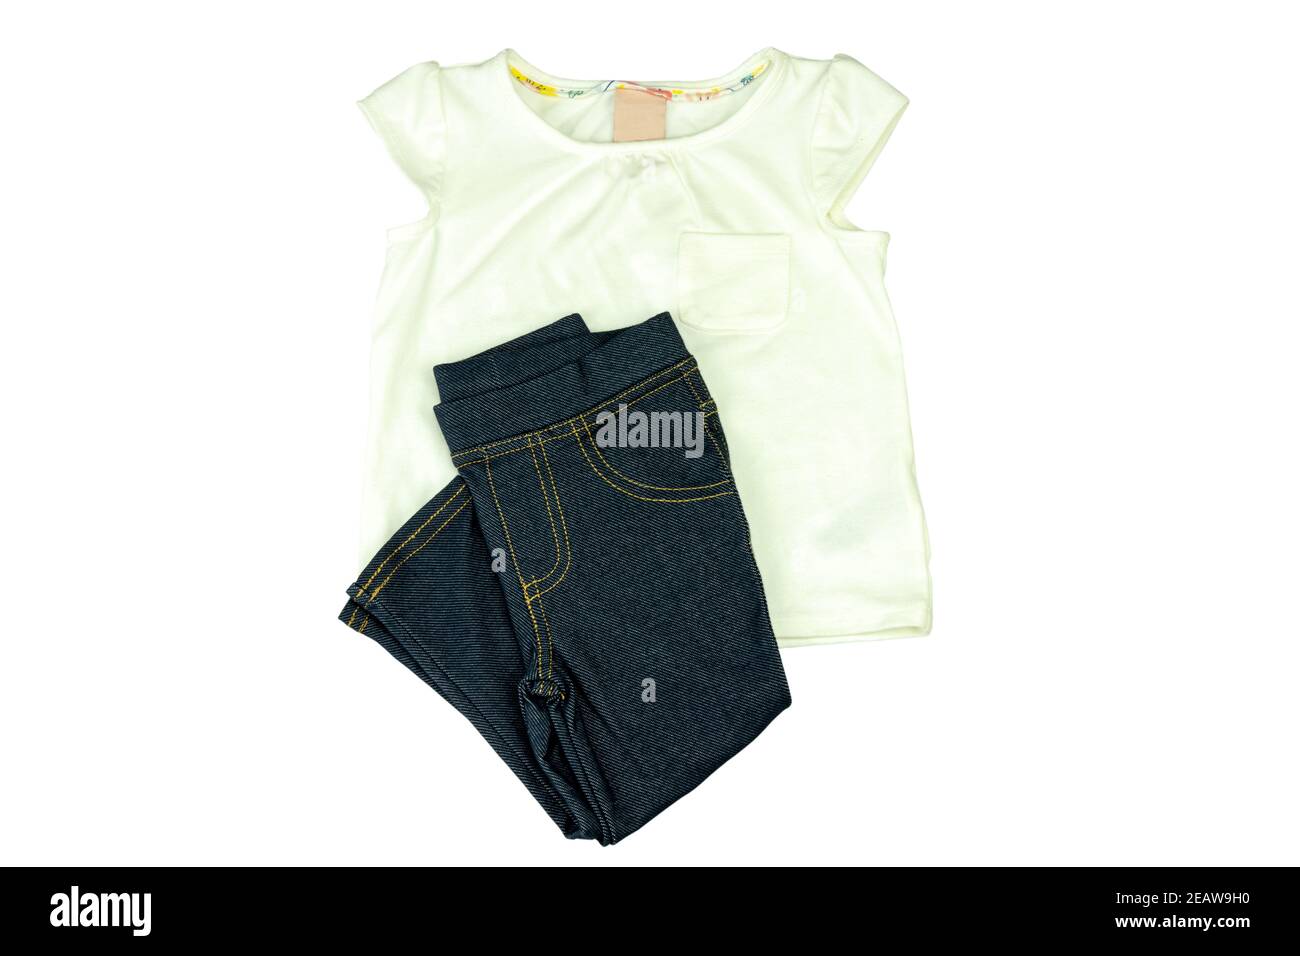 Ein schönes helles T-Shirt und eine dunkelblaue Jeans für kleines Mädchen isoliert auf weißem Hintergrund. Beschneidungspfad enthalten. Mode für Kinder. Stockfoto